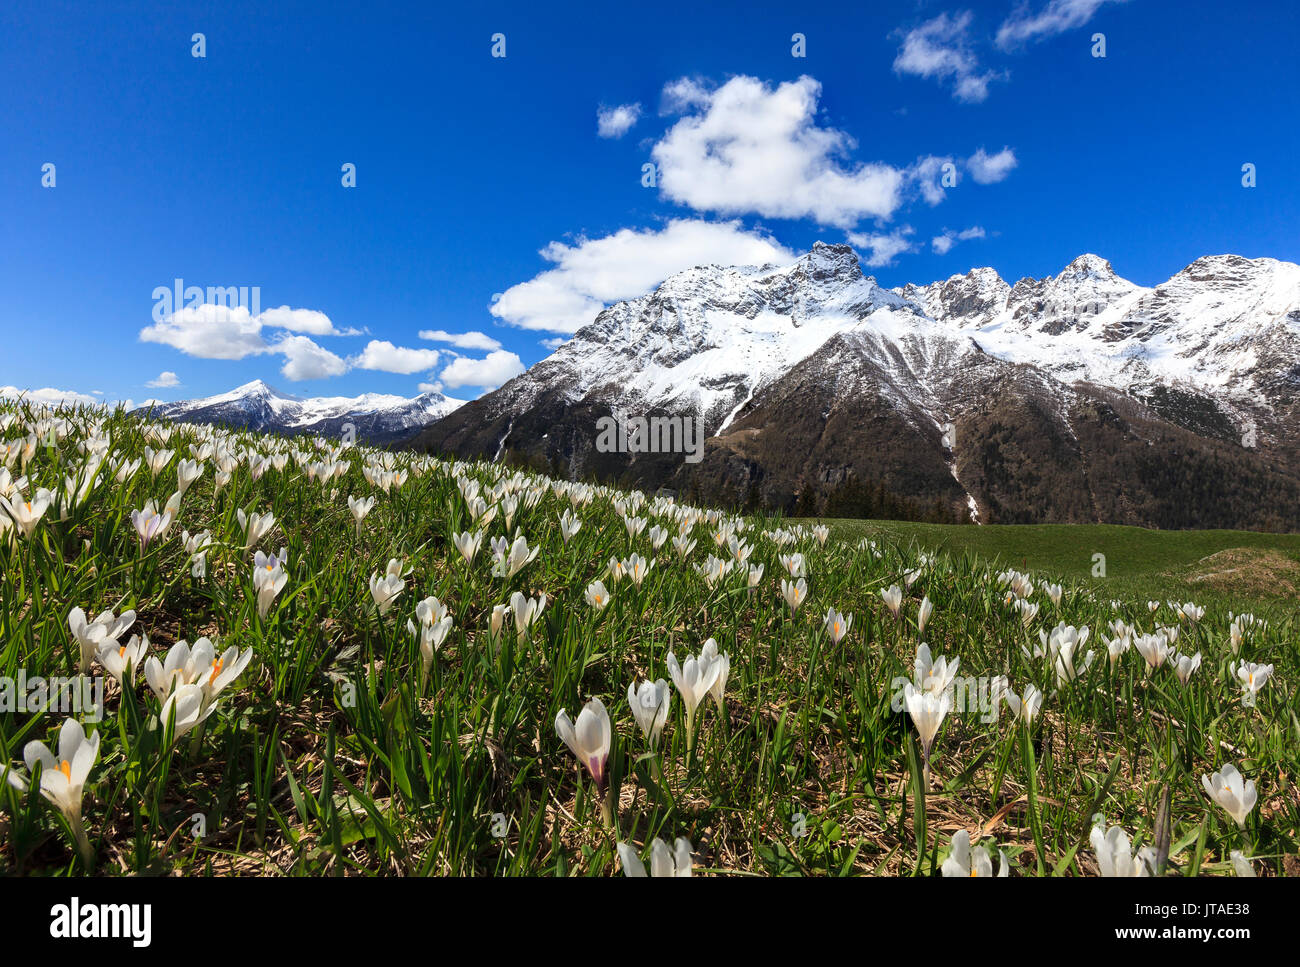 Vertes prairies couvertes de fleurs de crocus encadrée par des sommets enneigés au printemps, Zone Val Malenco de Barchi, Valtellina,, Lombardie, Italie, Europe Banque D'Images